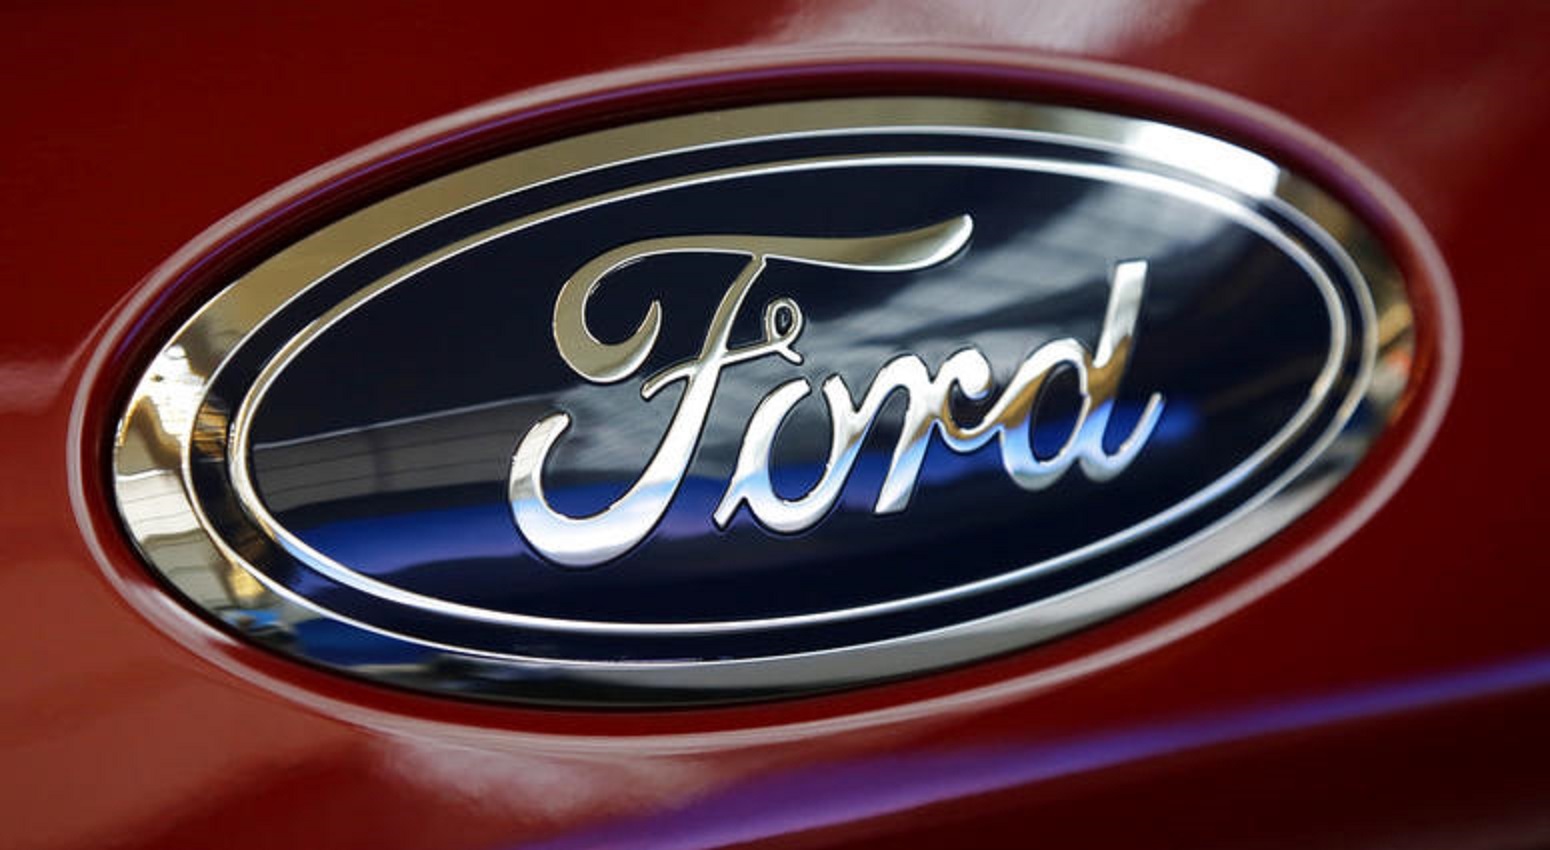 Hơn 665.000 xe của hãng Ford bị thu hồi theo chiến dịch an toàn